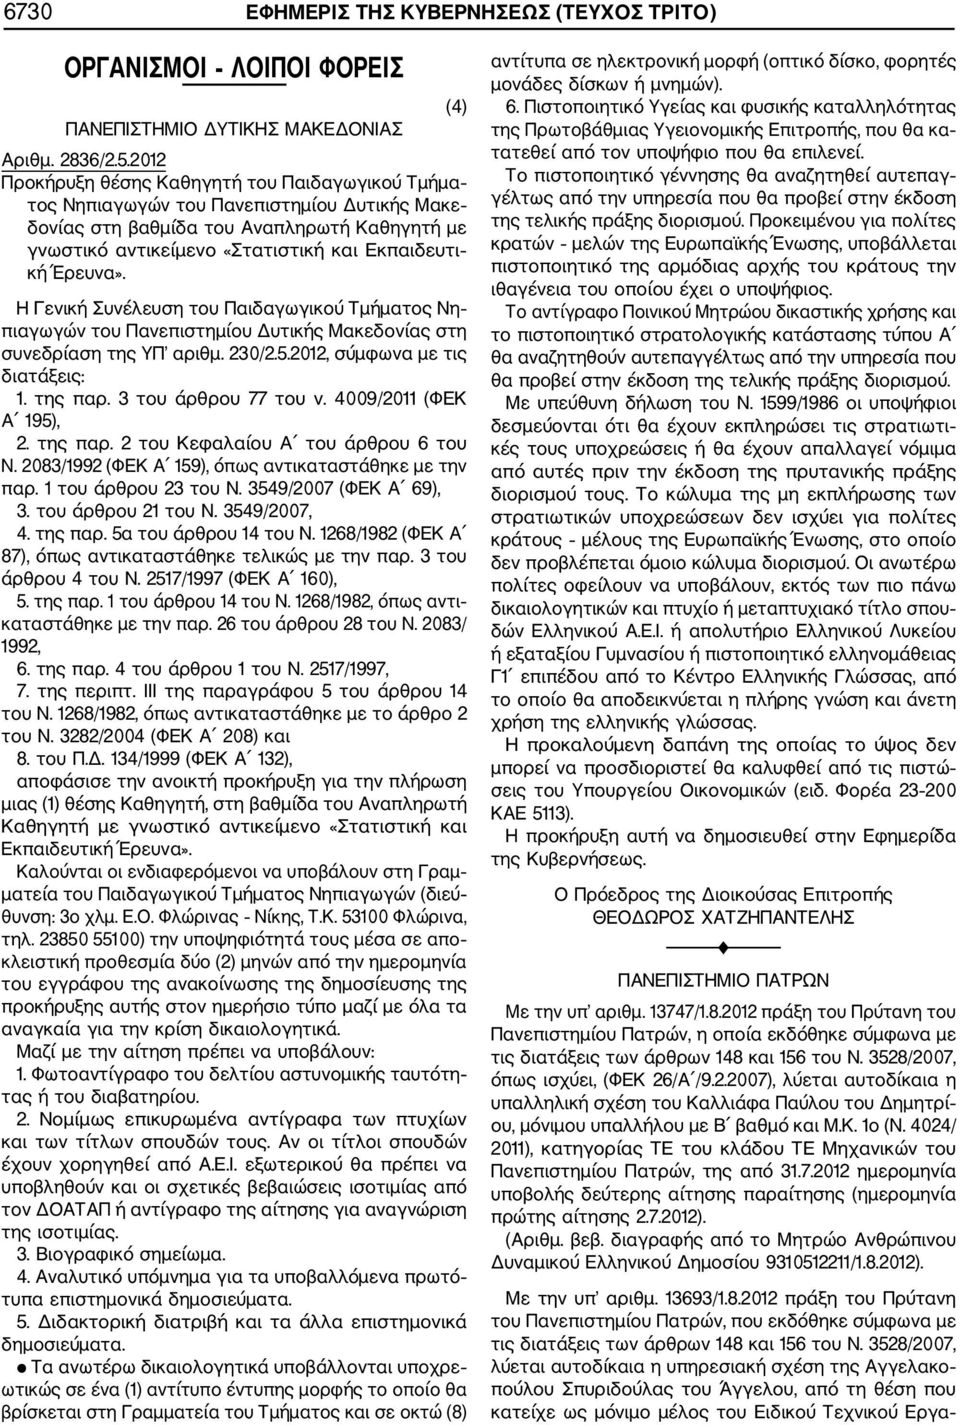 Έρευνα». Η Γενική Συνέλευση του Παιδαγωγικού Τμήματος Νη πιαγωγών του Πανεπιστημίου Δυτικής Μακεδονίας στη συνεδρίαση της ΥΠ αριθμ. 230/2.5.2012, σύμφωνα με τις διατάξεις: 1. της παρ.